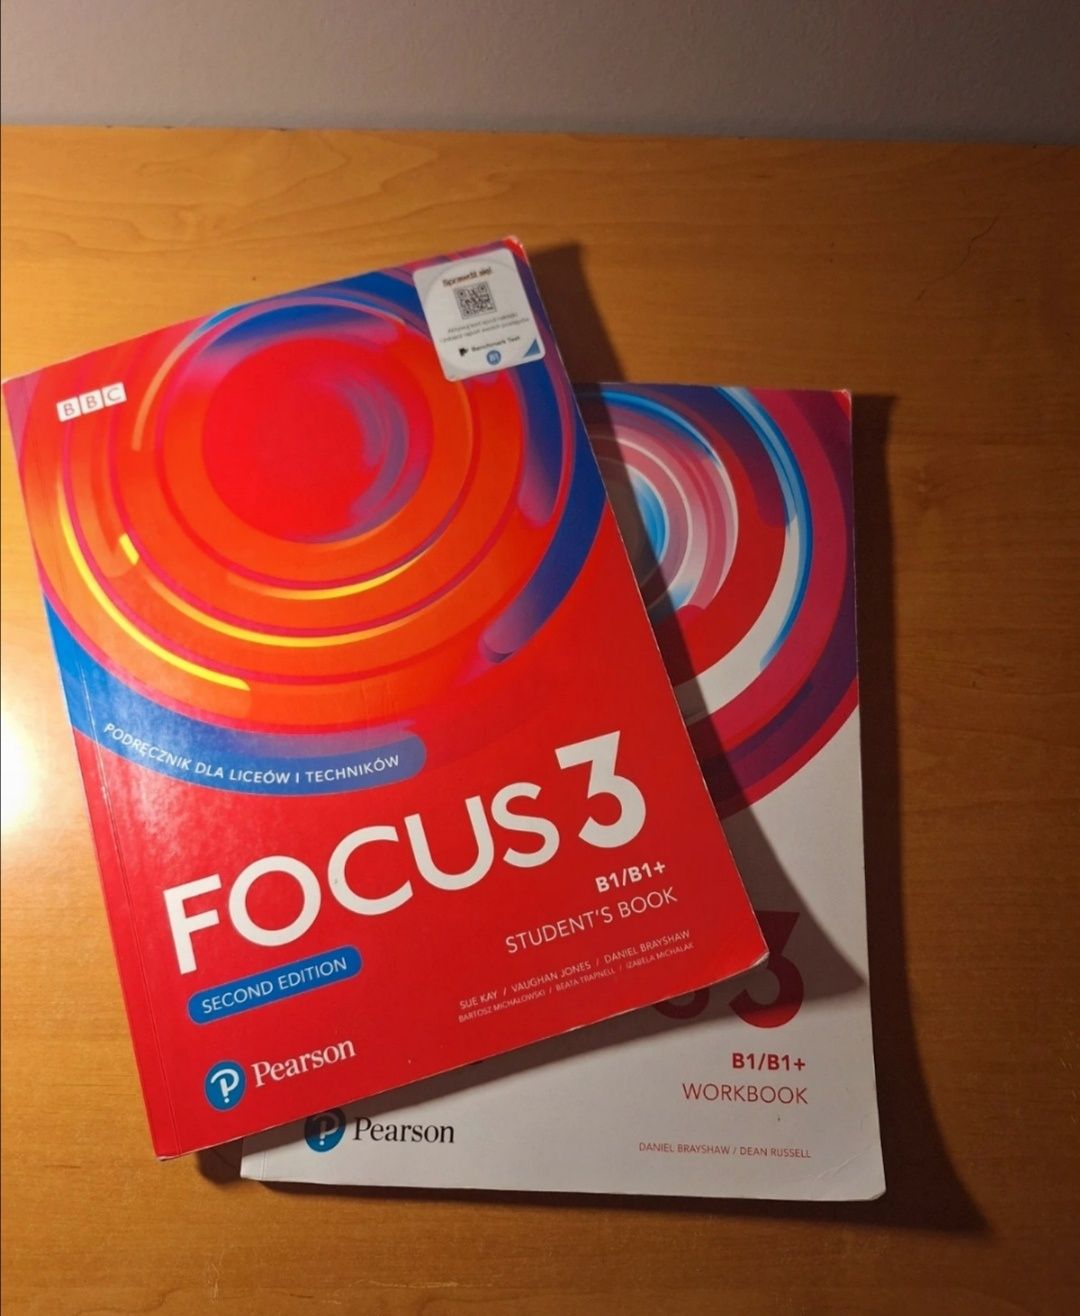 Focus 3 podręcznik i ćwiczenia